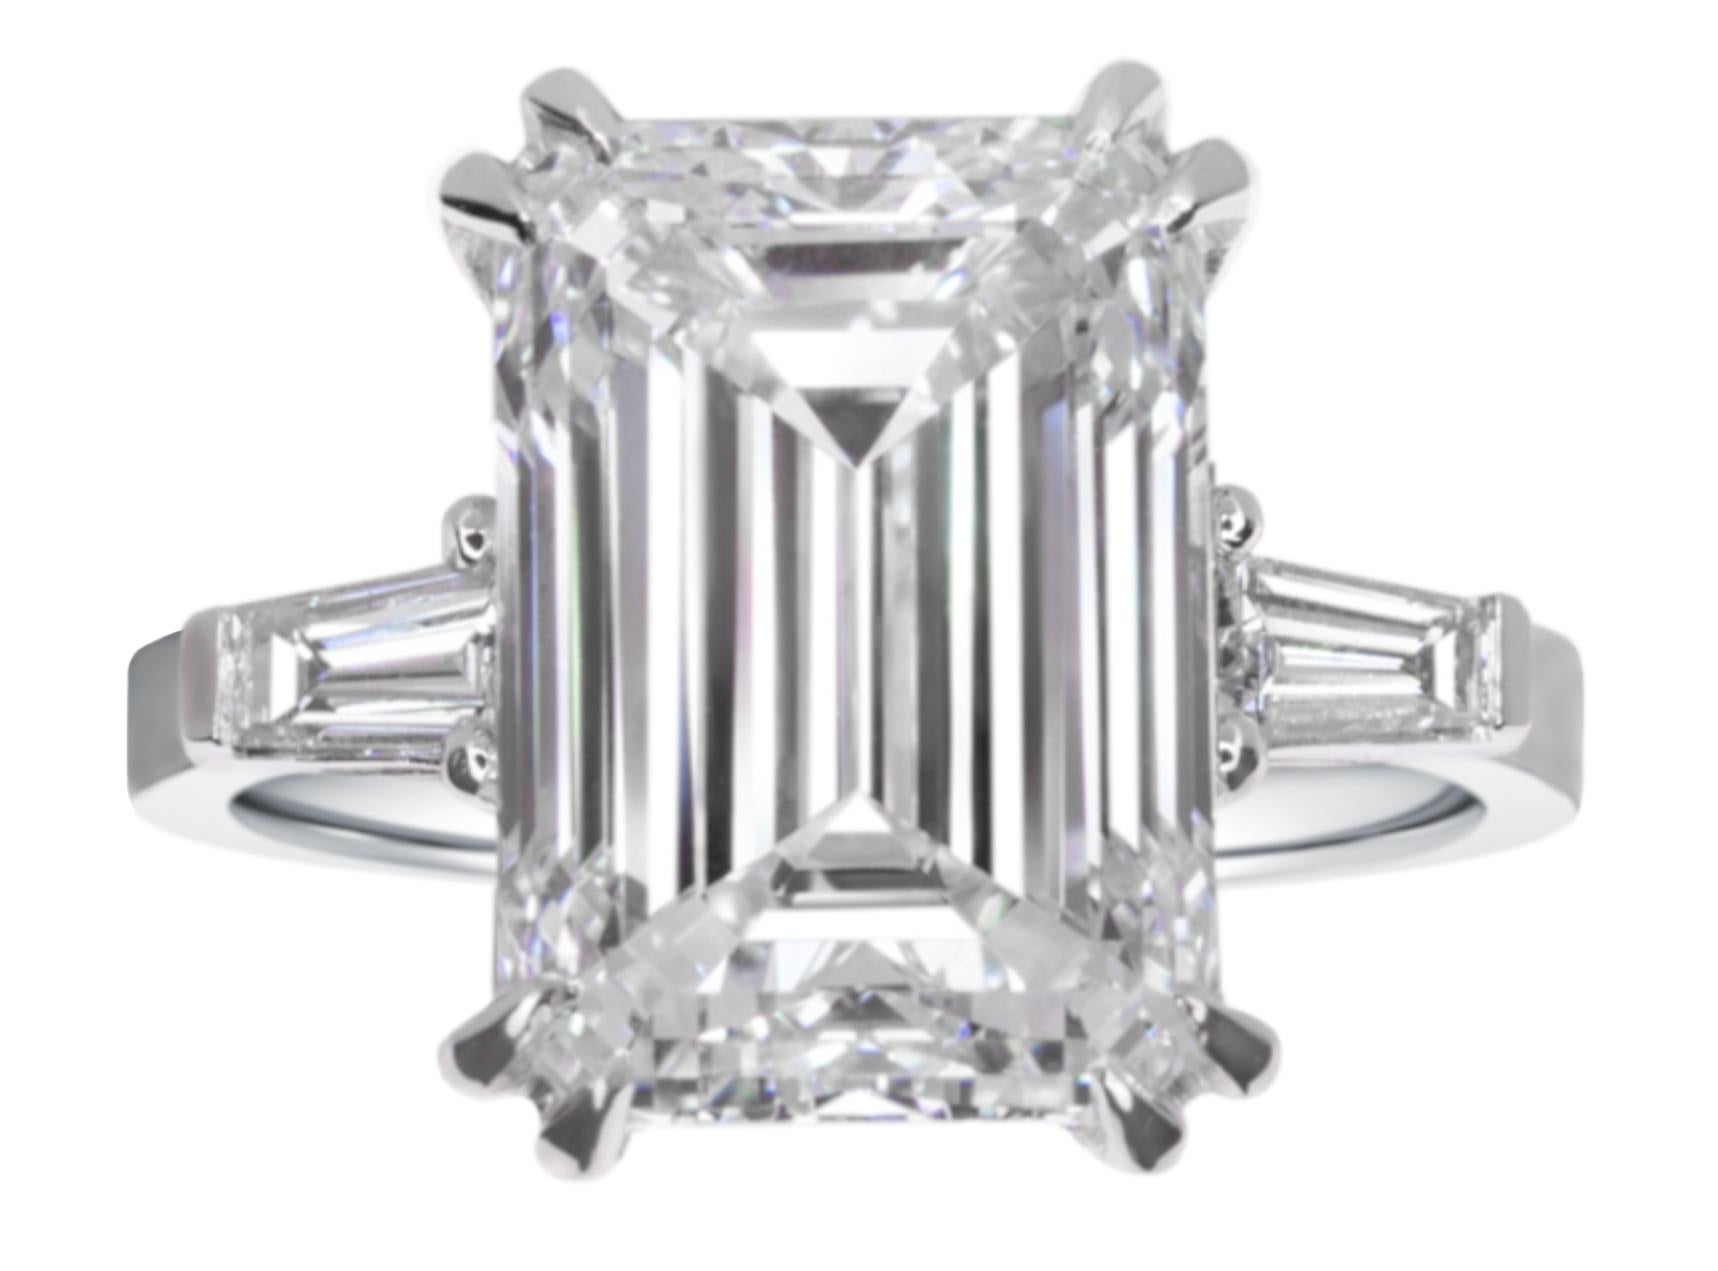 Nous vous présentons une bague exquise en diamant taille émeraude certifiée GIA qui rayonne de sophistication et d'allure intemporelle.

Diamant central :
Au cœur de cette pièce captivante se trouve un diamant taille émeraude certifié GIA, d'un